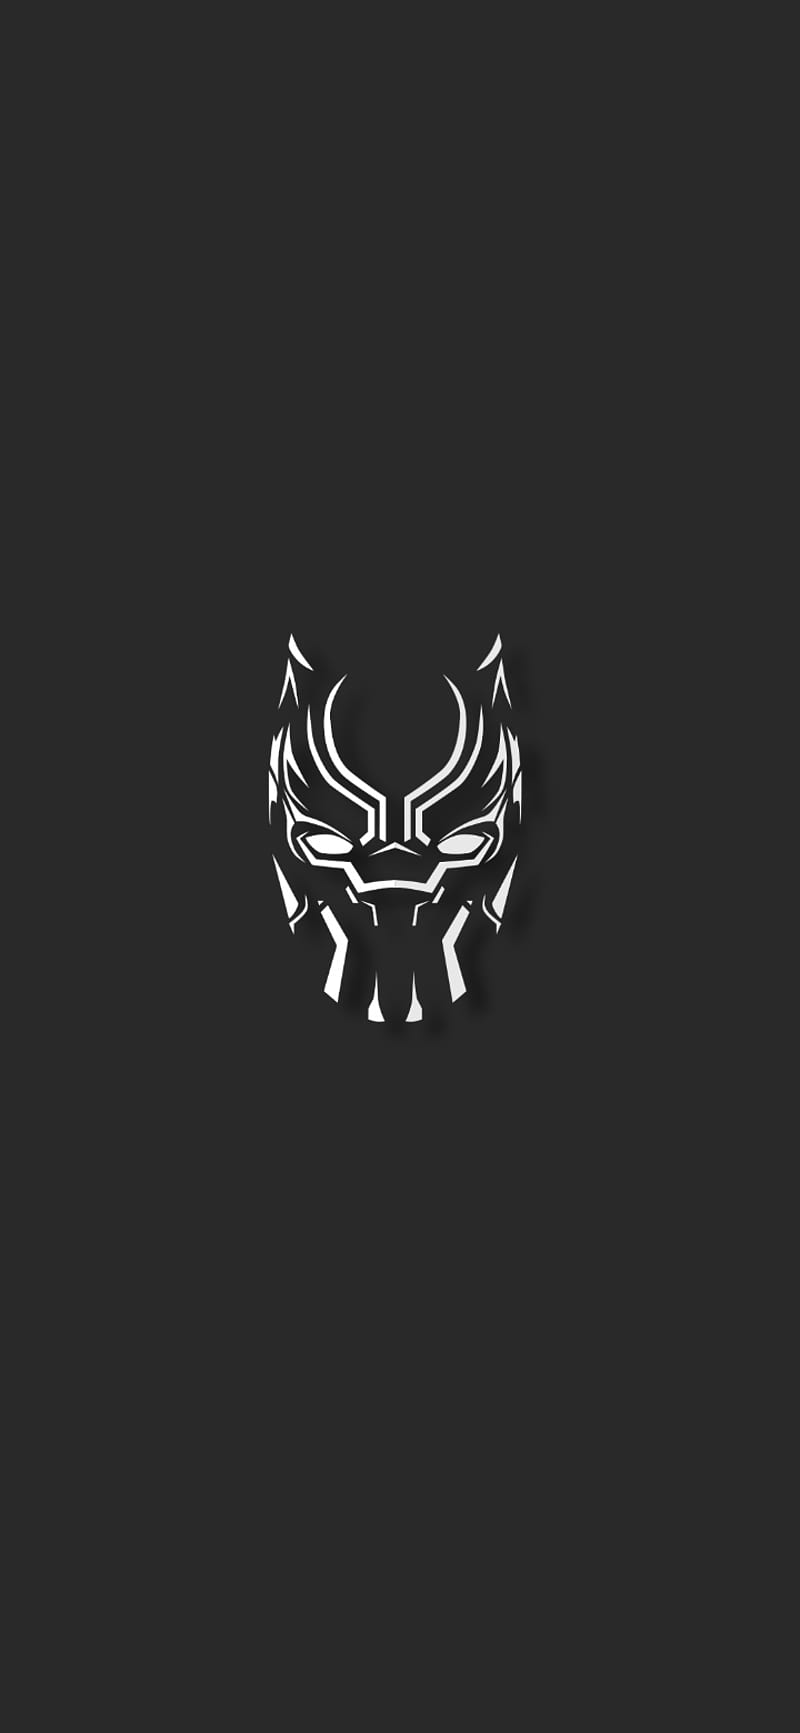 avengers logo black panther｜TikTok Search